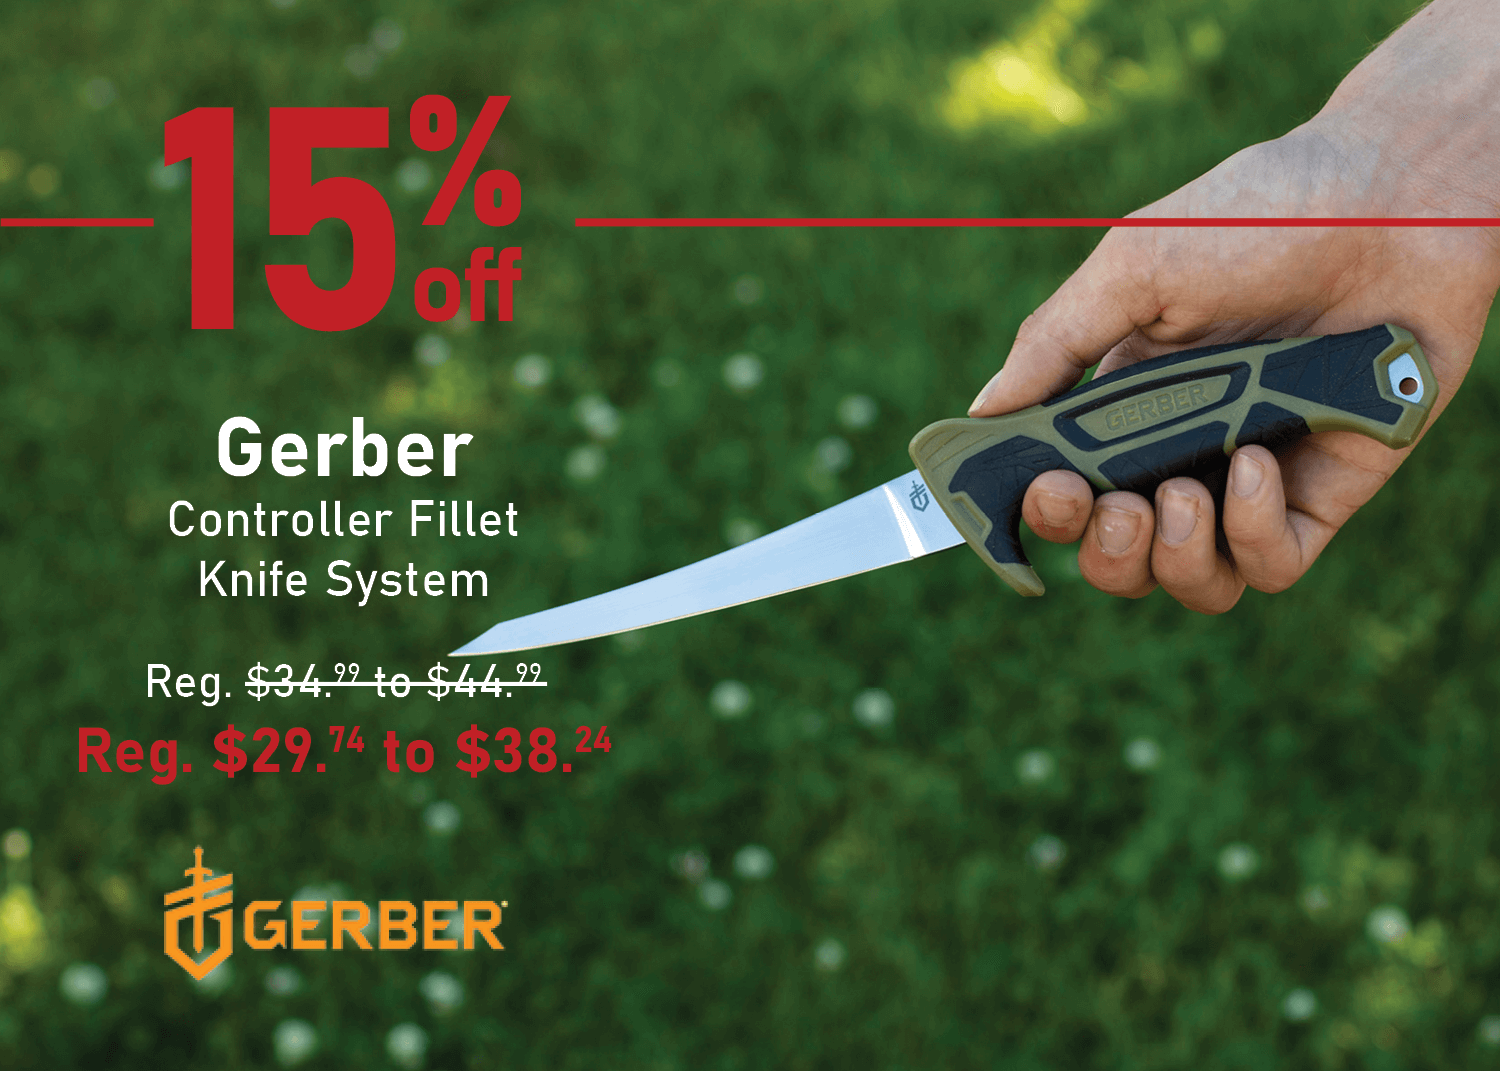 Save 15% on the Gerber Controller Fillet Knife System